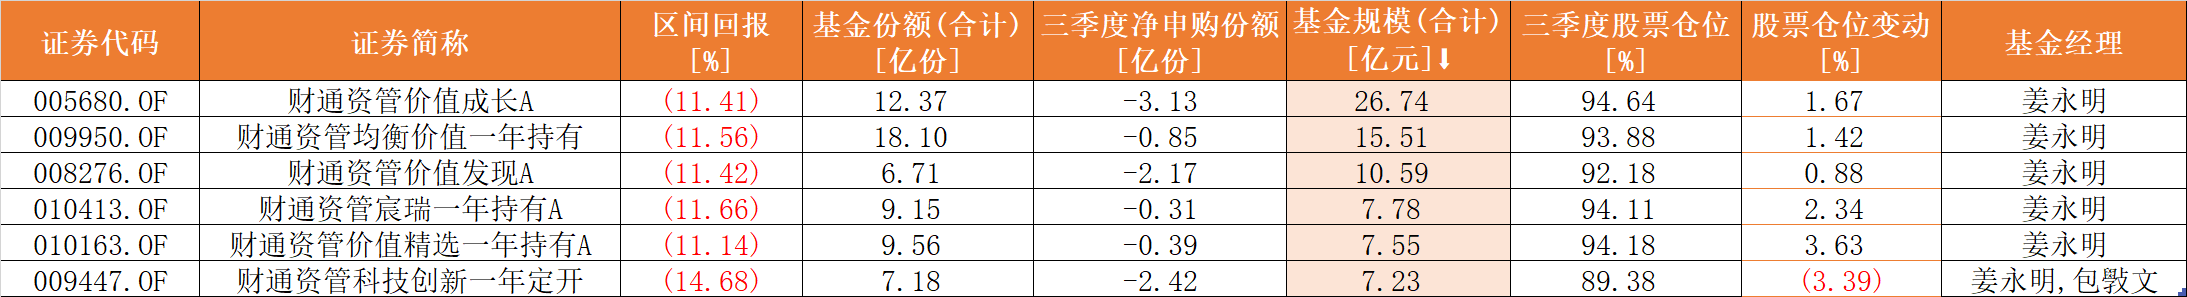 退出百亿之列，财通资管姜永明三季度产品跌超10%